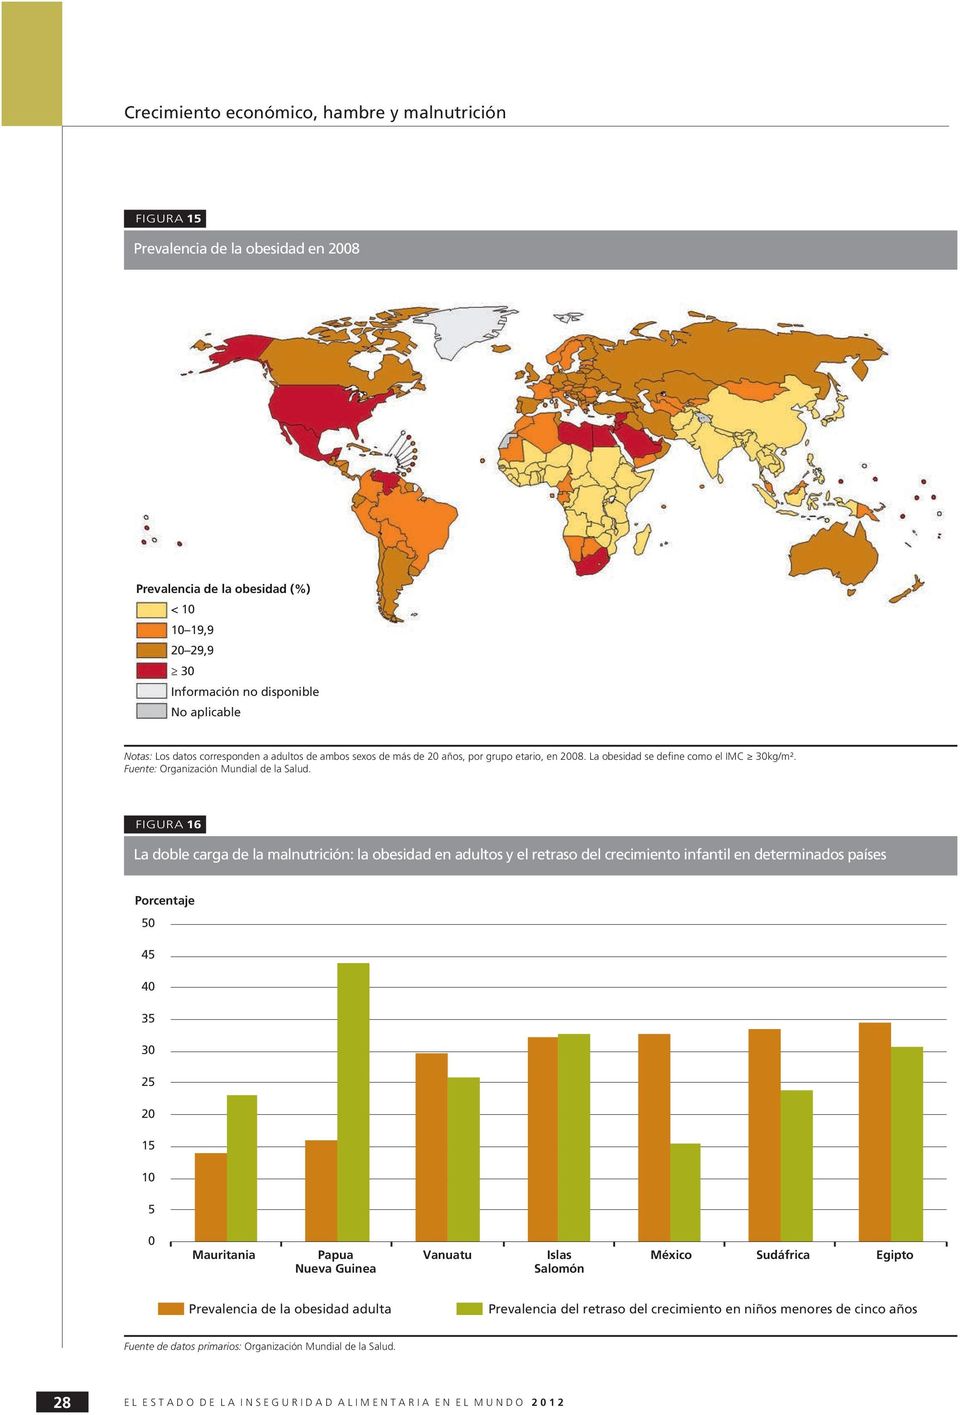 FIGURA 16 La doble carga de la malnutrición: la obesidad en adultos y el retraso del crecimiento infantil en determinados países Porcentaje 5 45 4 35 3 25 2 15 1 5 Mauritania Papua Nueva Guinea